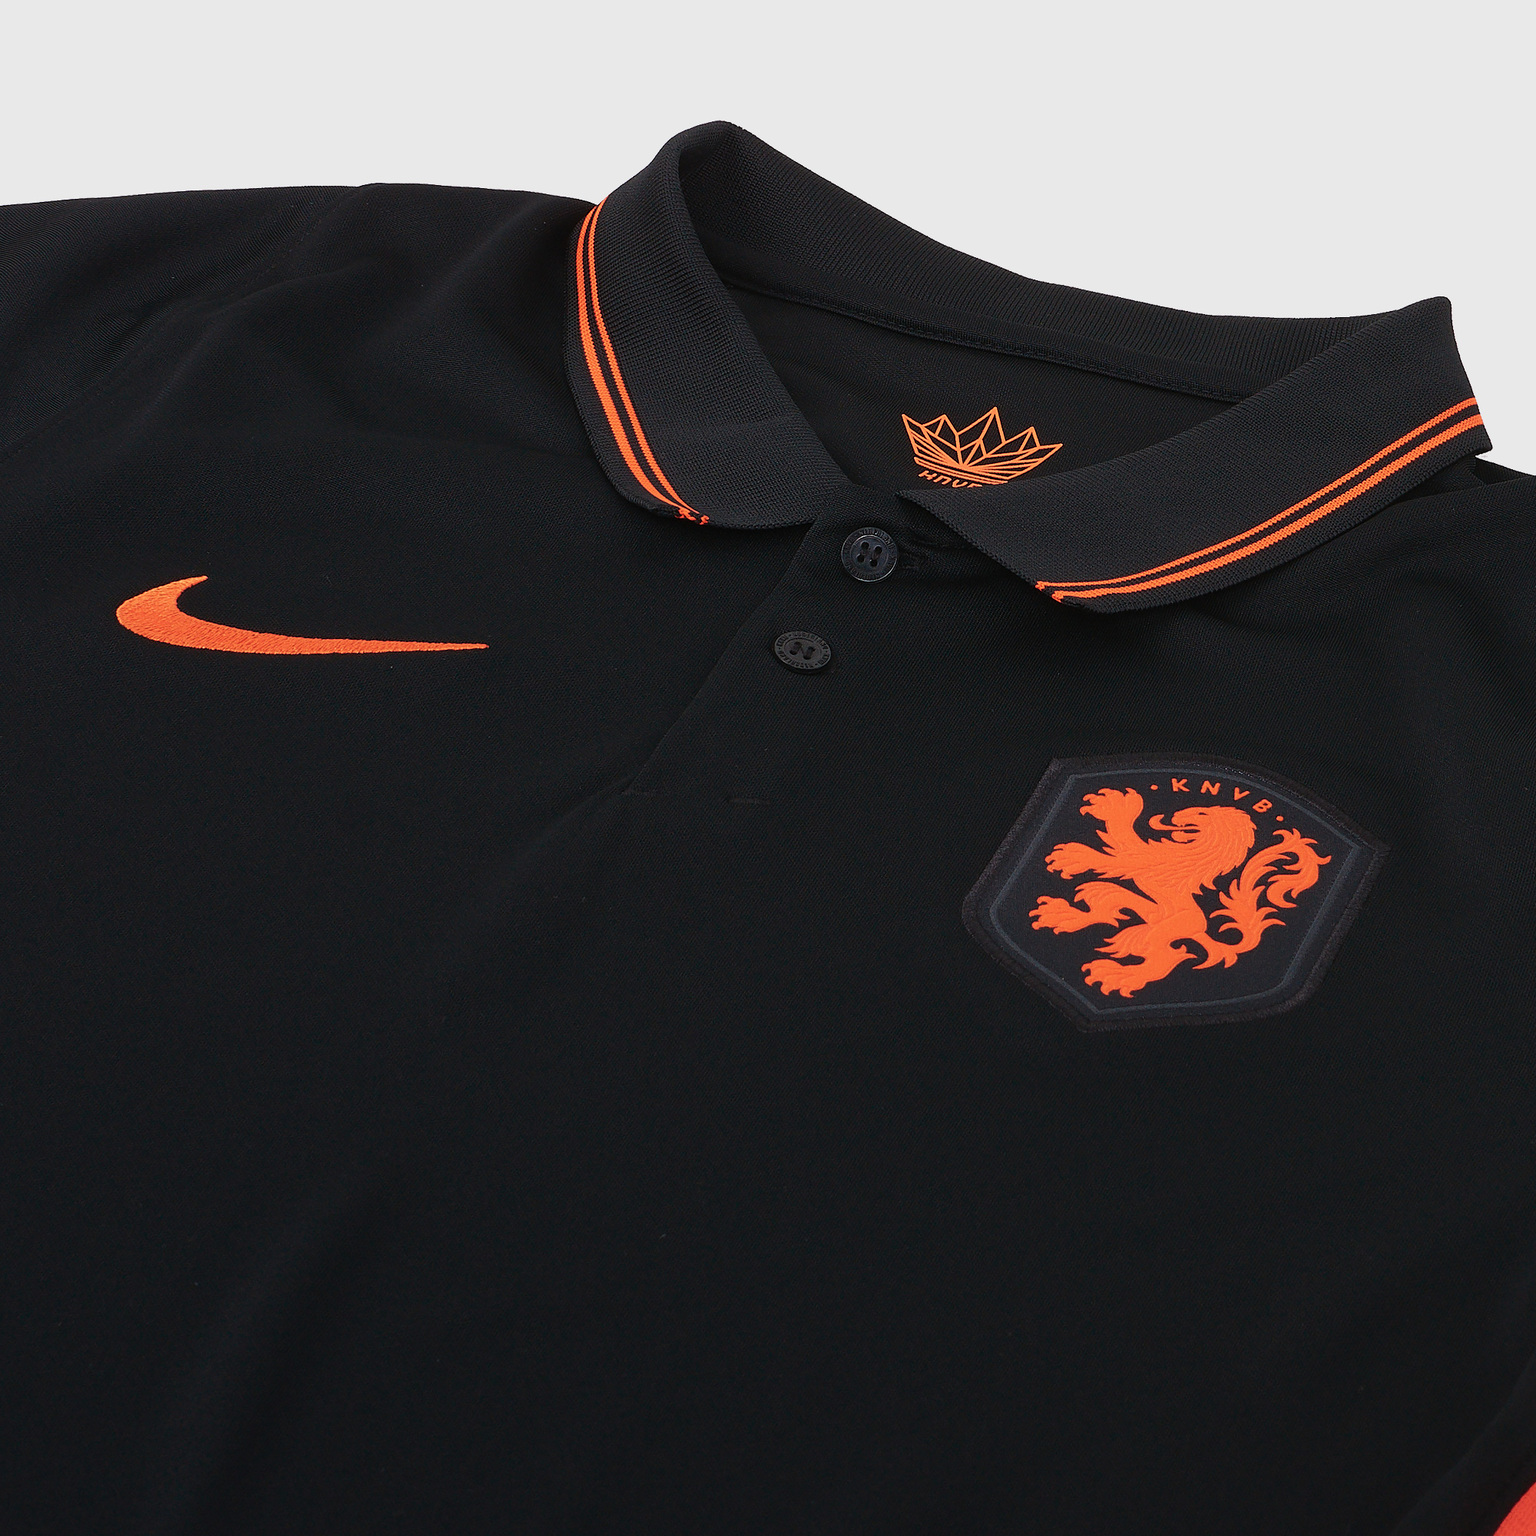 Футболка игровая выездная Nike сборной Нидерландов сезон 2020/21